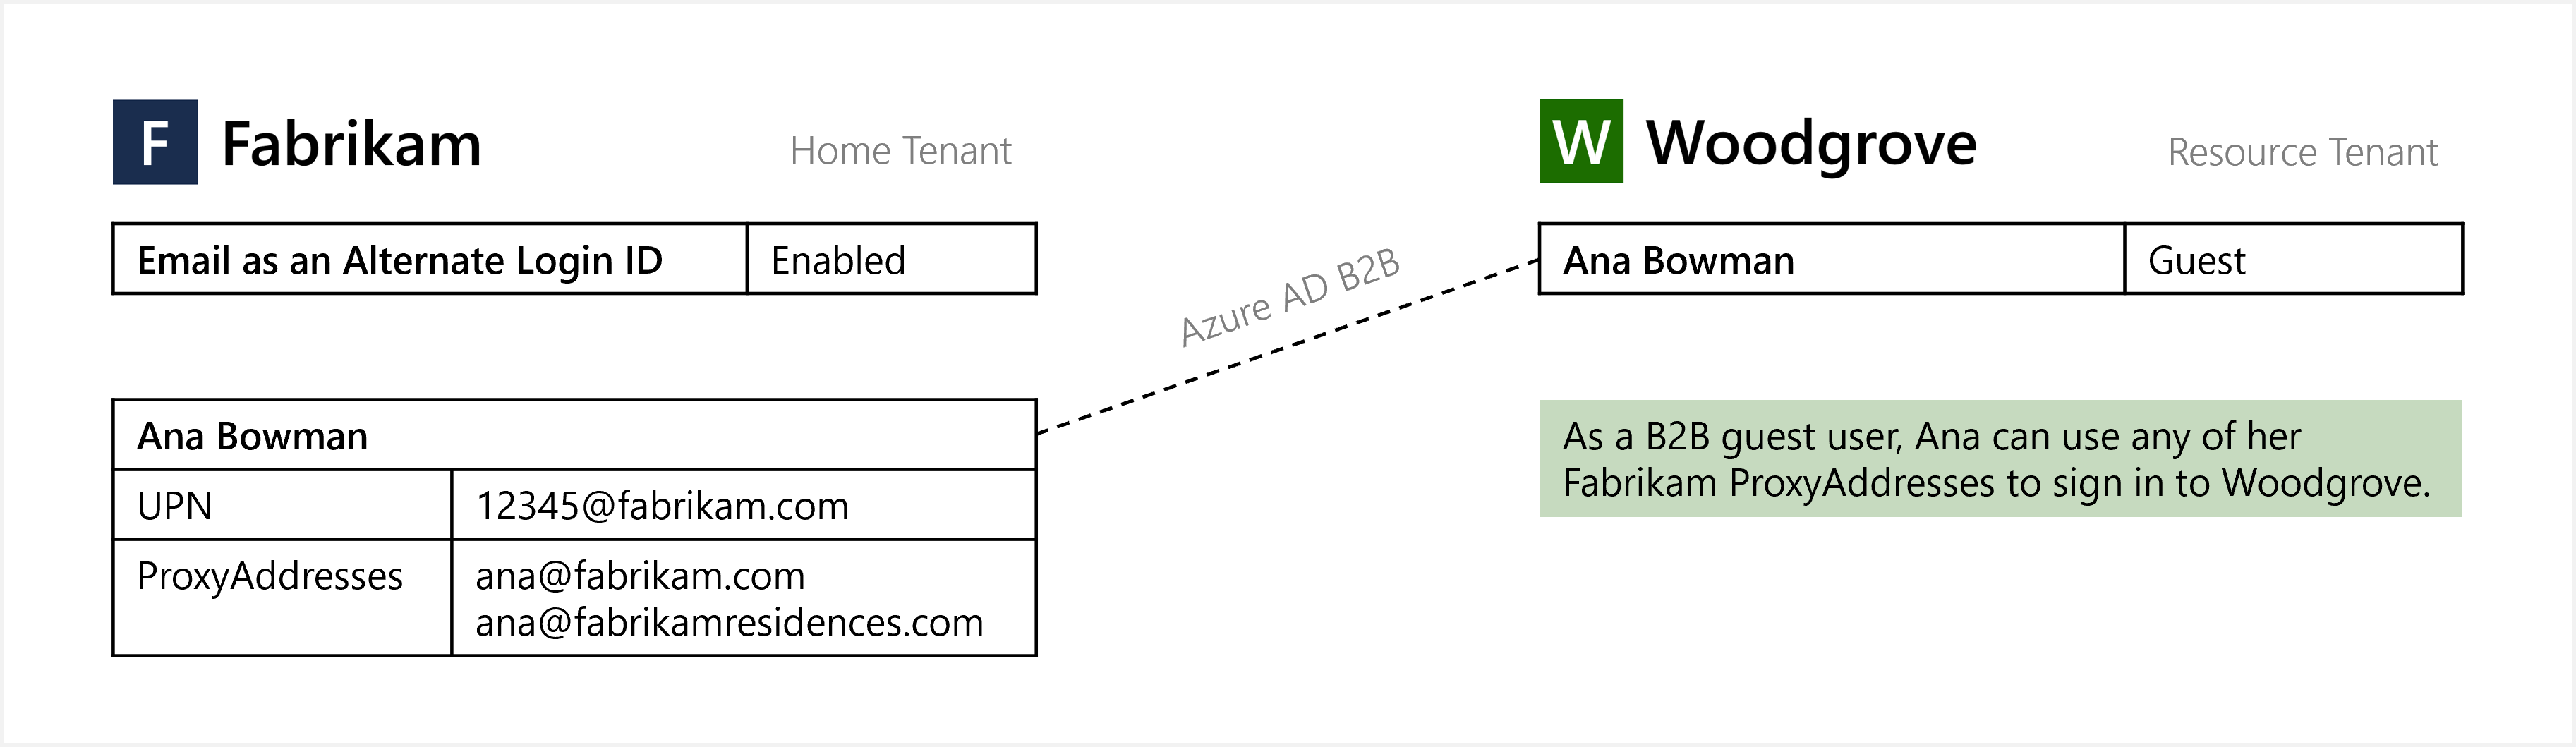 Diagramm von „E-Mail-Adresse als alternative Anmelde-ID“ für die B2B-Gastbenutzeranmeldung